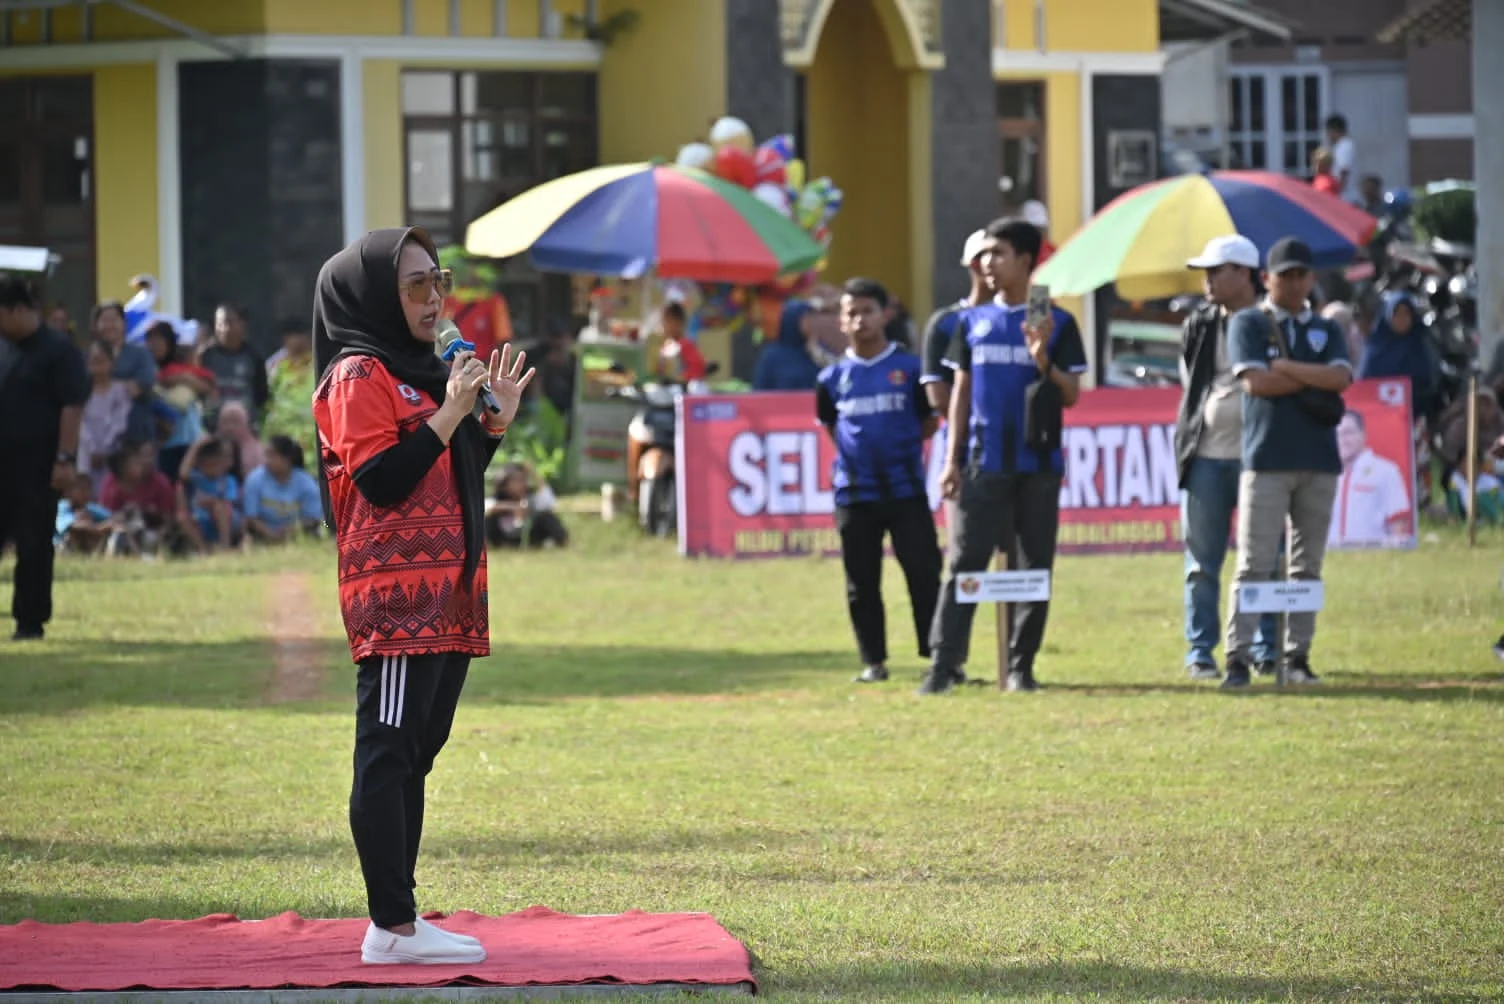 Bupati Tiwi Berharap Liga Askab Mampu Meningkatkan Prestasi Sepakbola Purbalingga